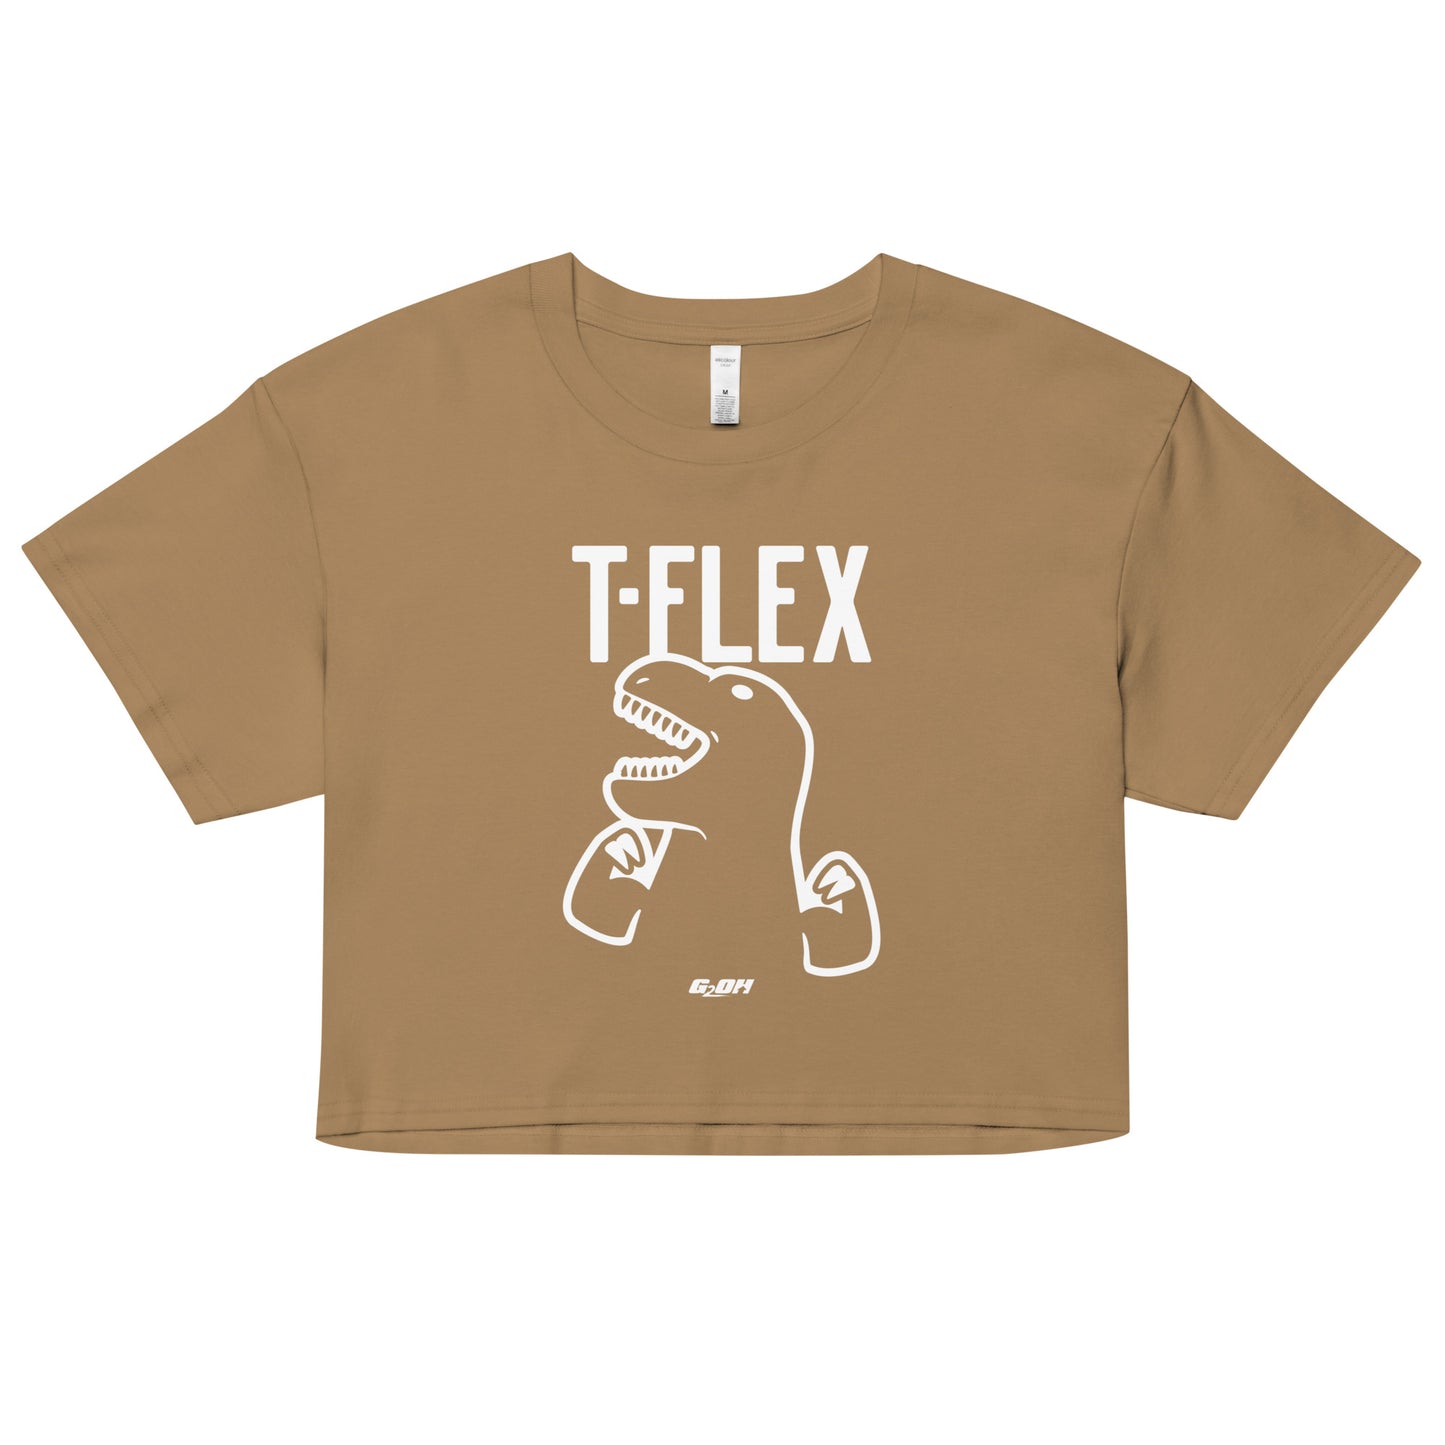 T-Flex Women's Crop Tee